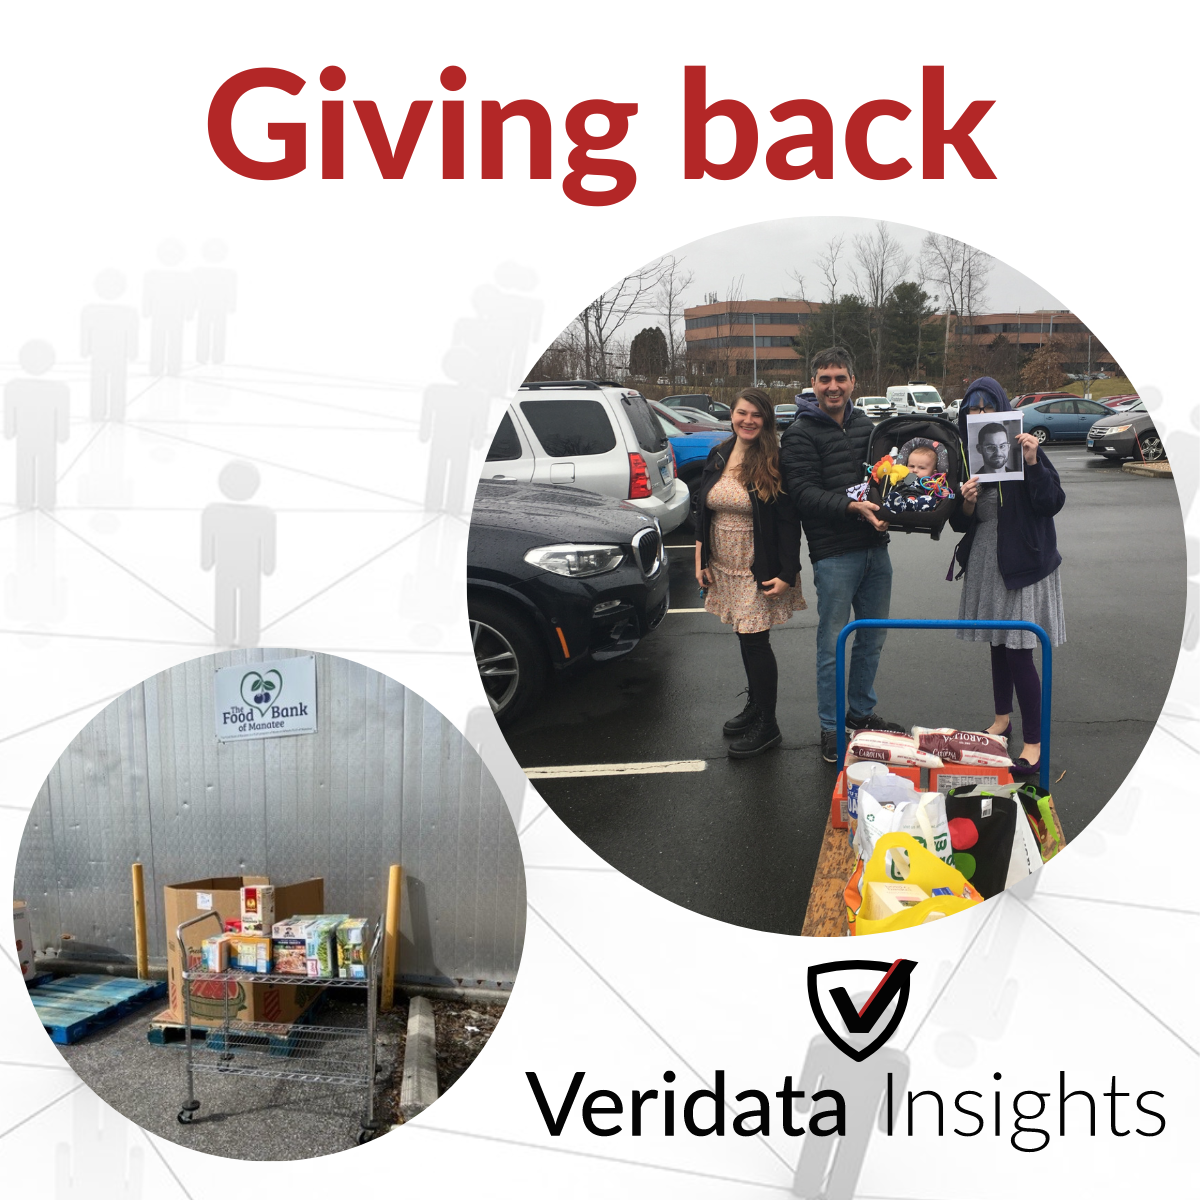 Veridata Insights gives back